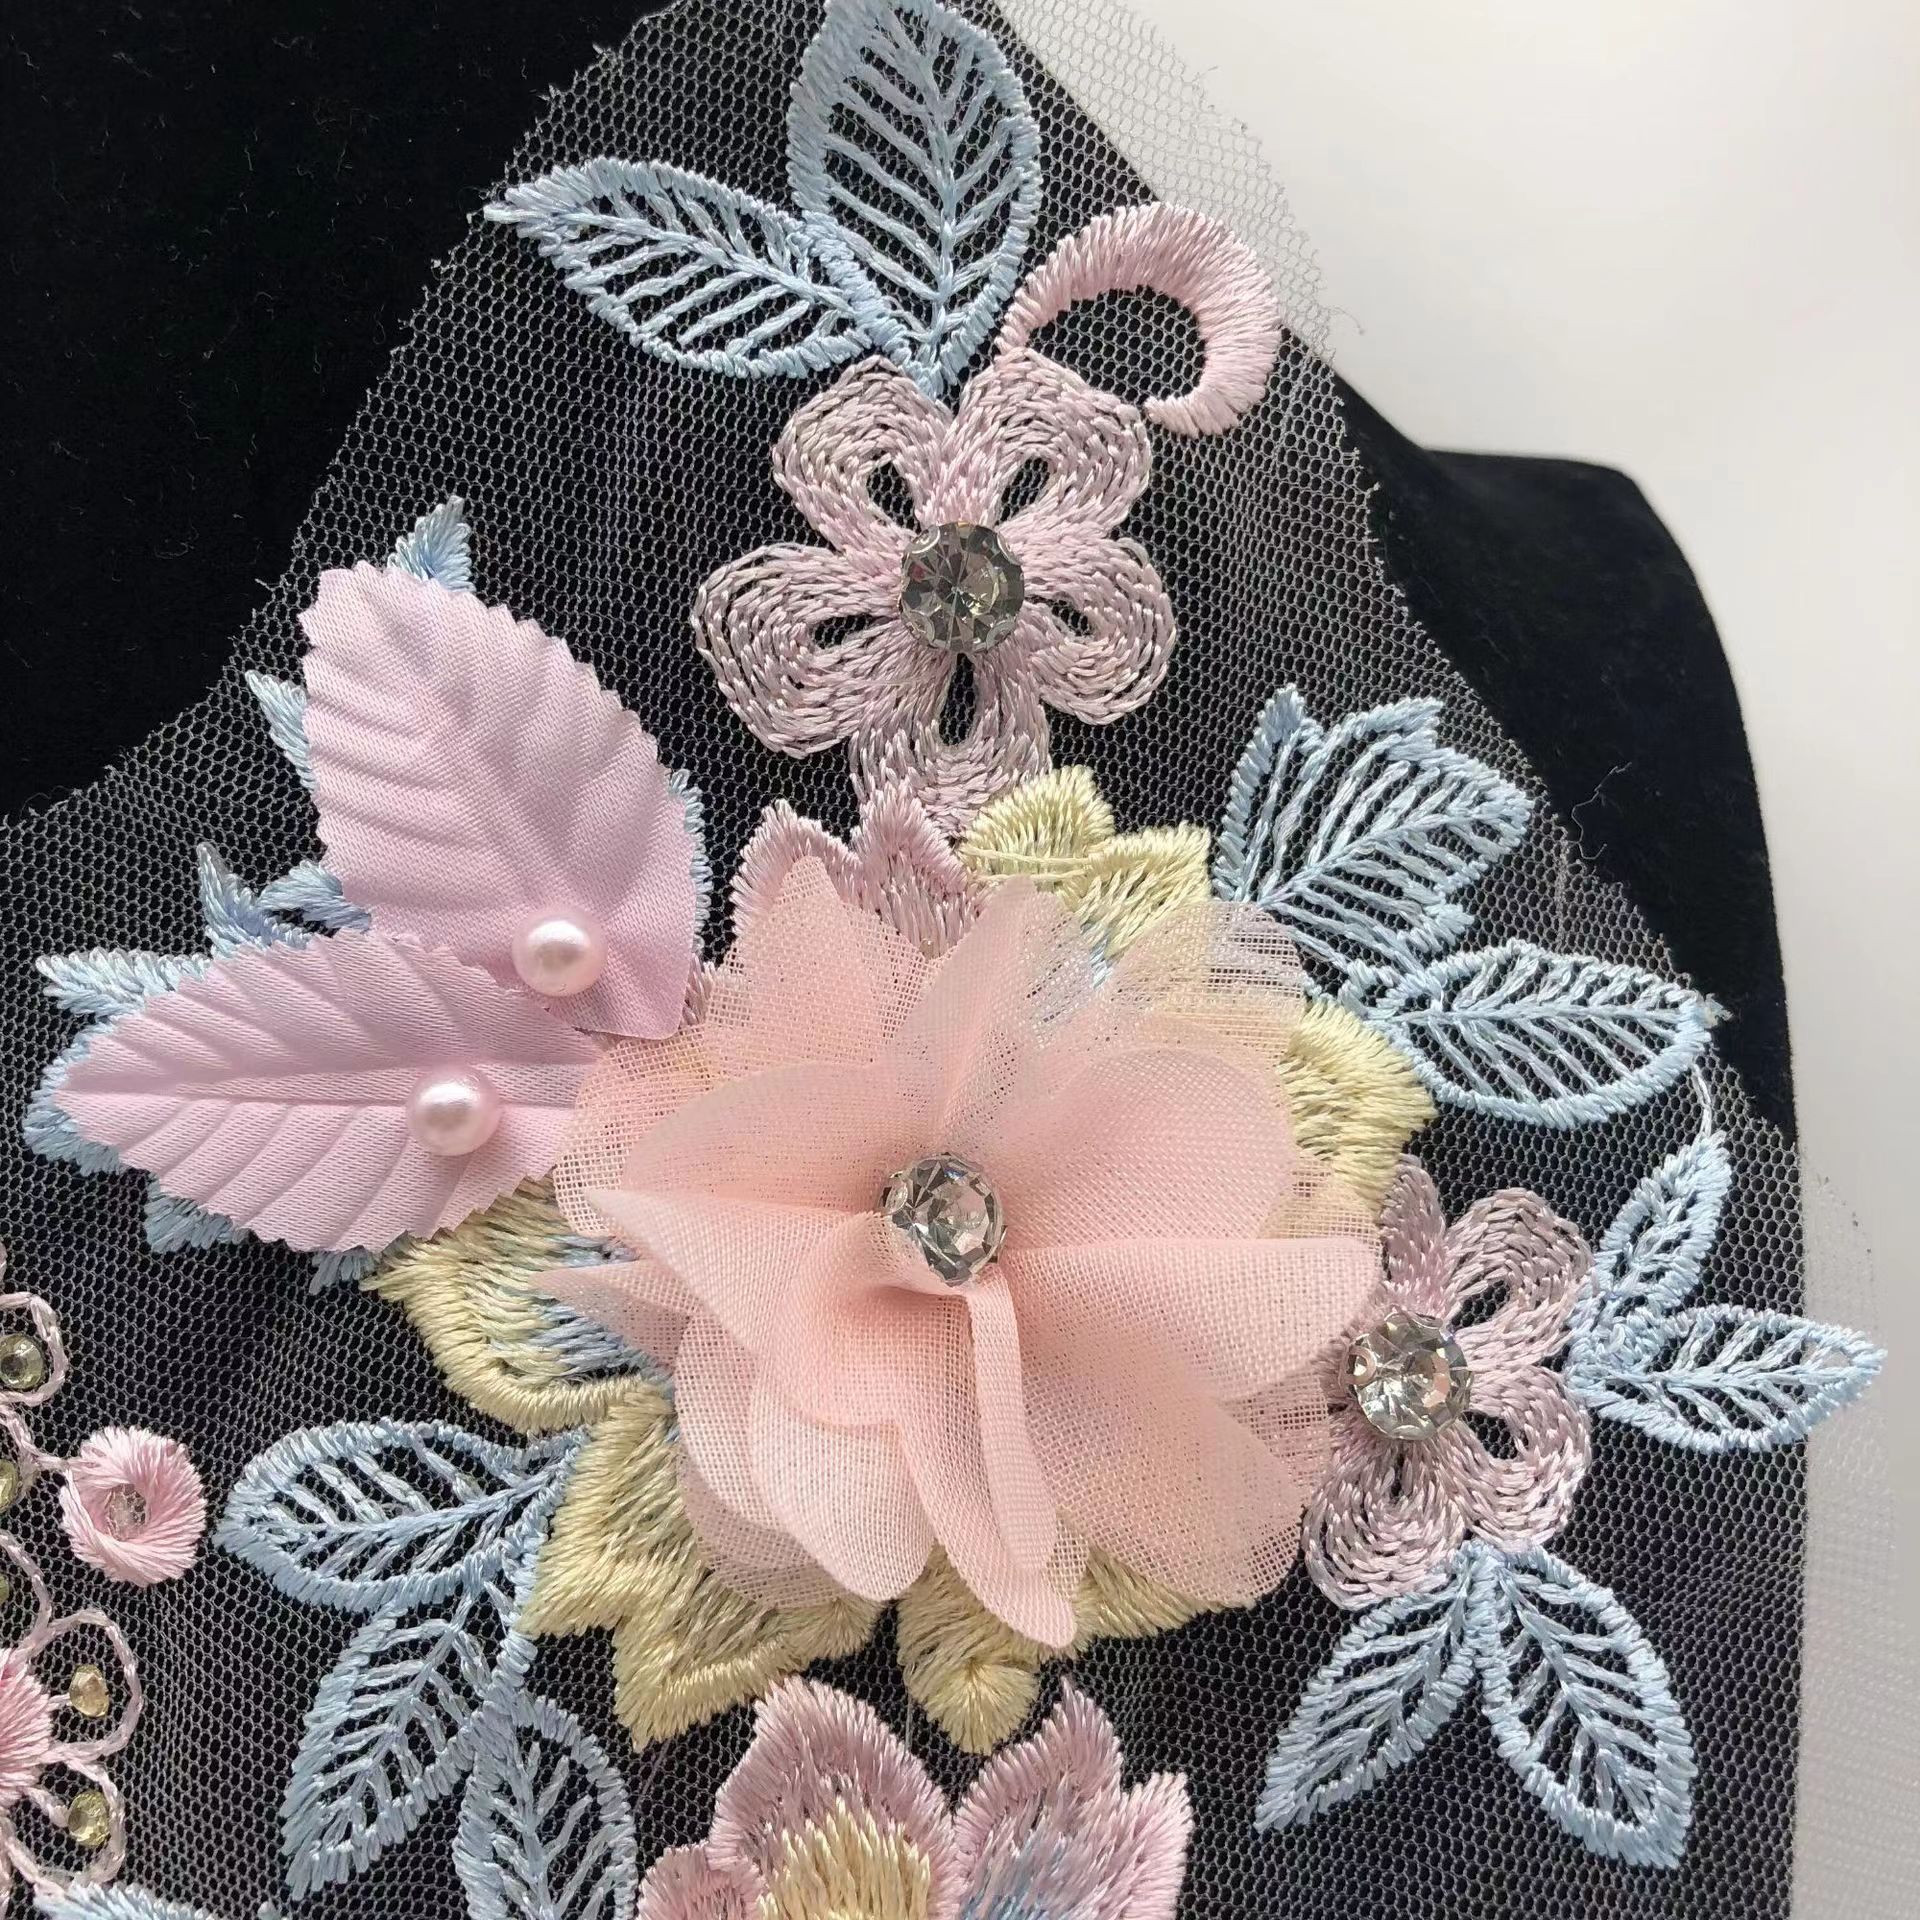 1pcs Beautiful DIY Bouquet Flower Lace Collar Trim Without Bouquet